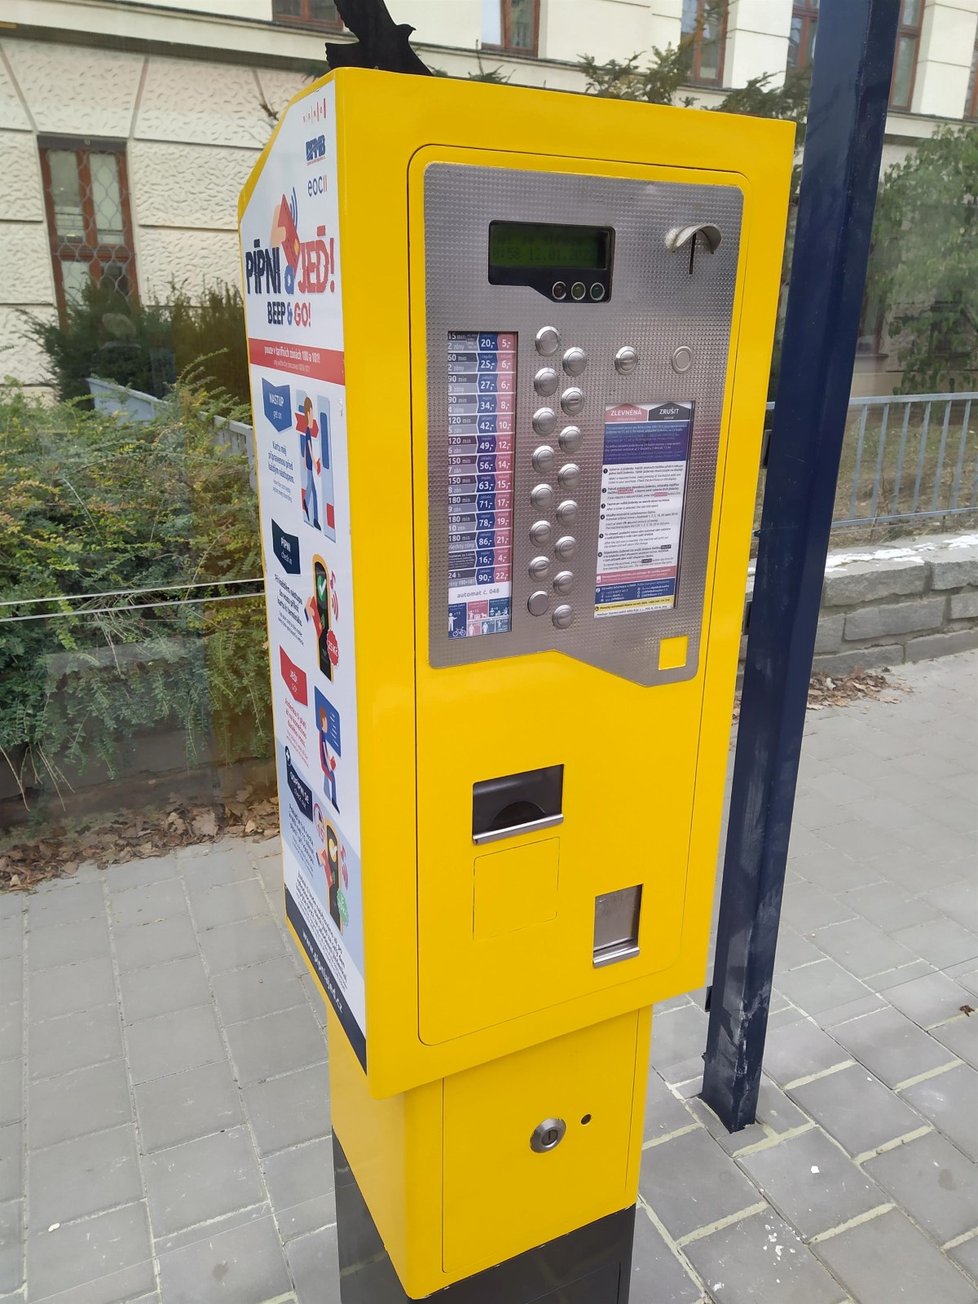 Ve vozech i na zastávkách MHD Brno propaguje elektronickou formu jízdného, navíc lidem umožňuje jednorázové odbavení jízdy bankovní kartou „Pípni a jeď“.